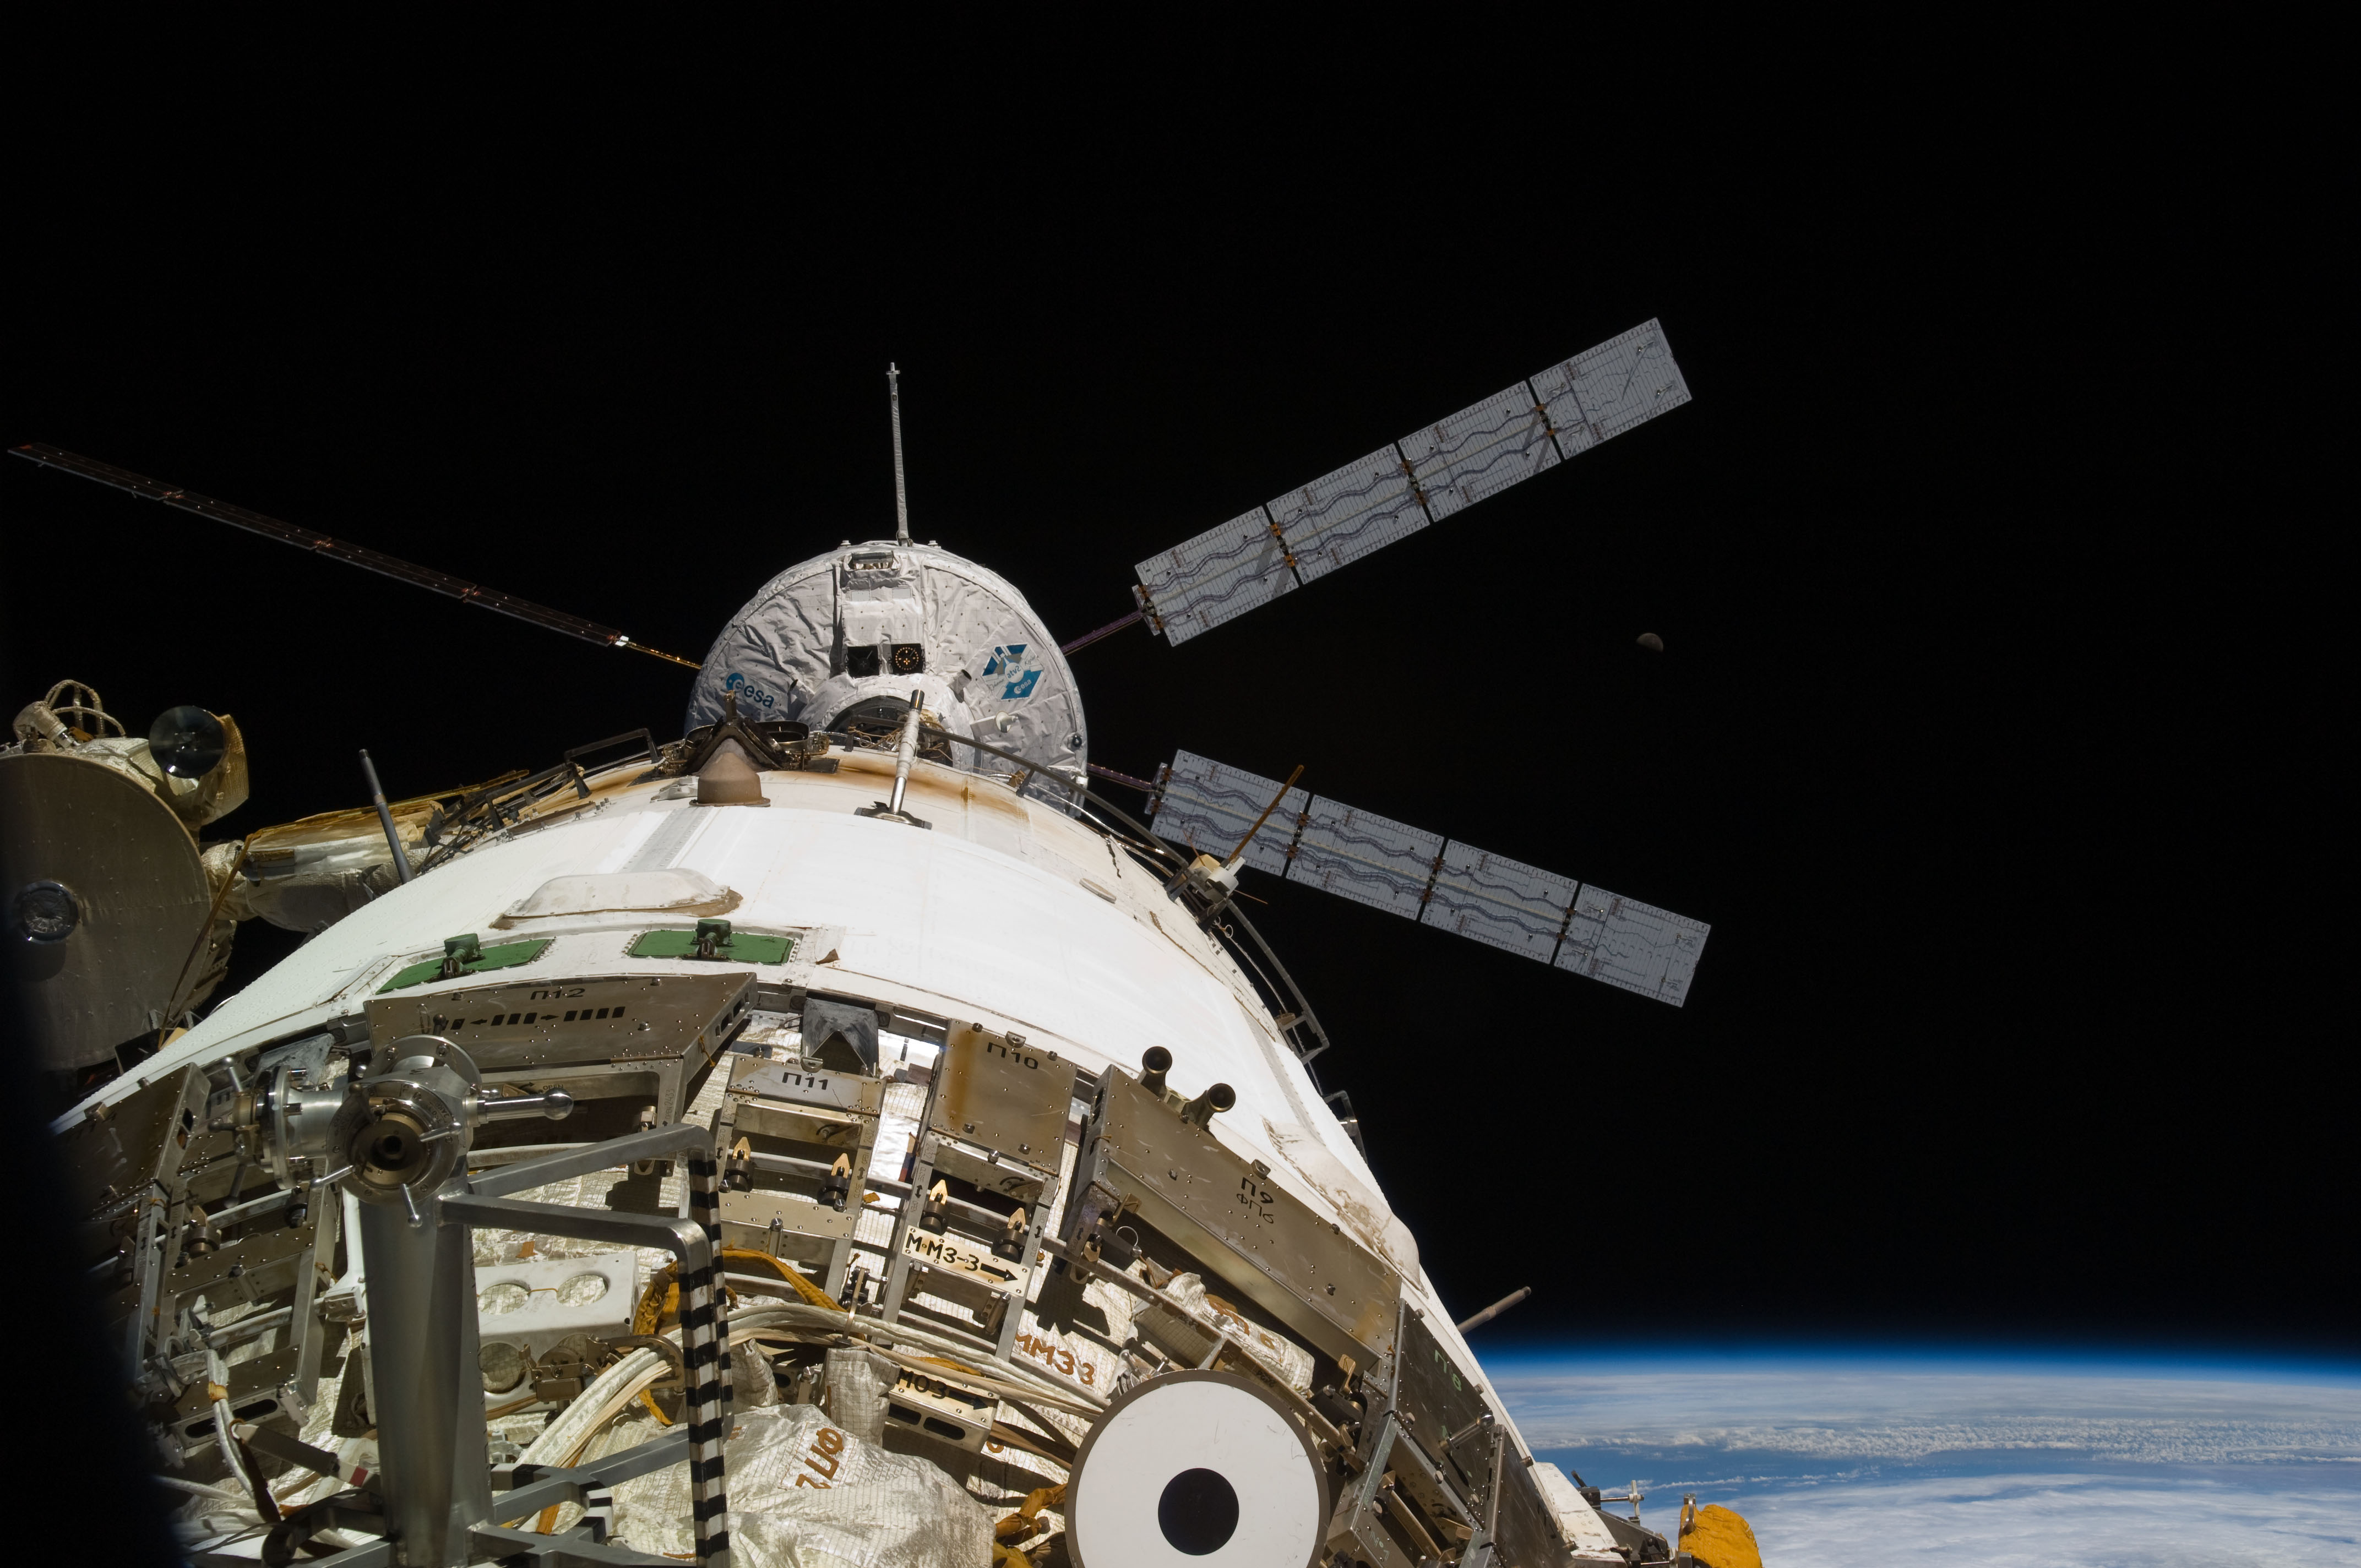 ISS-26 ATV-2 Johannes Kepler docks to Zvezda